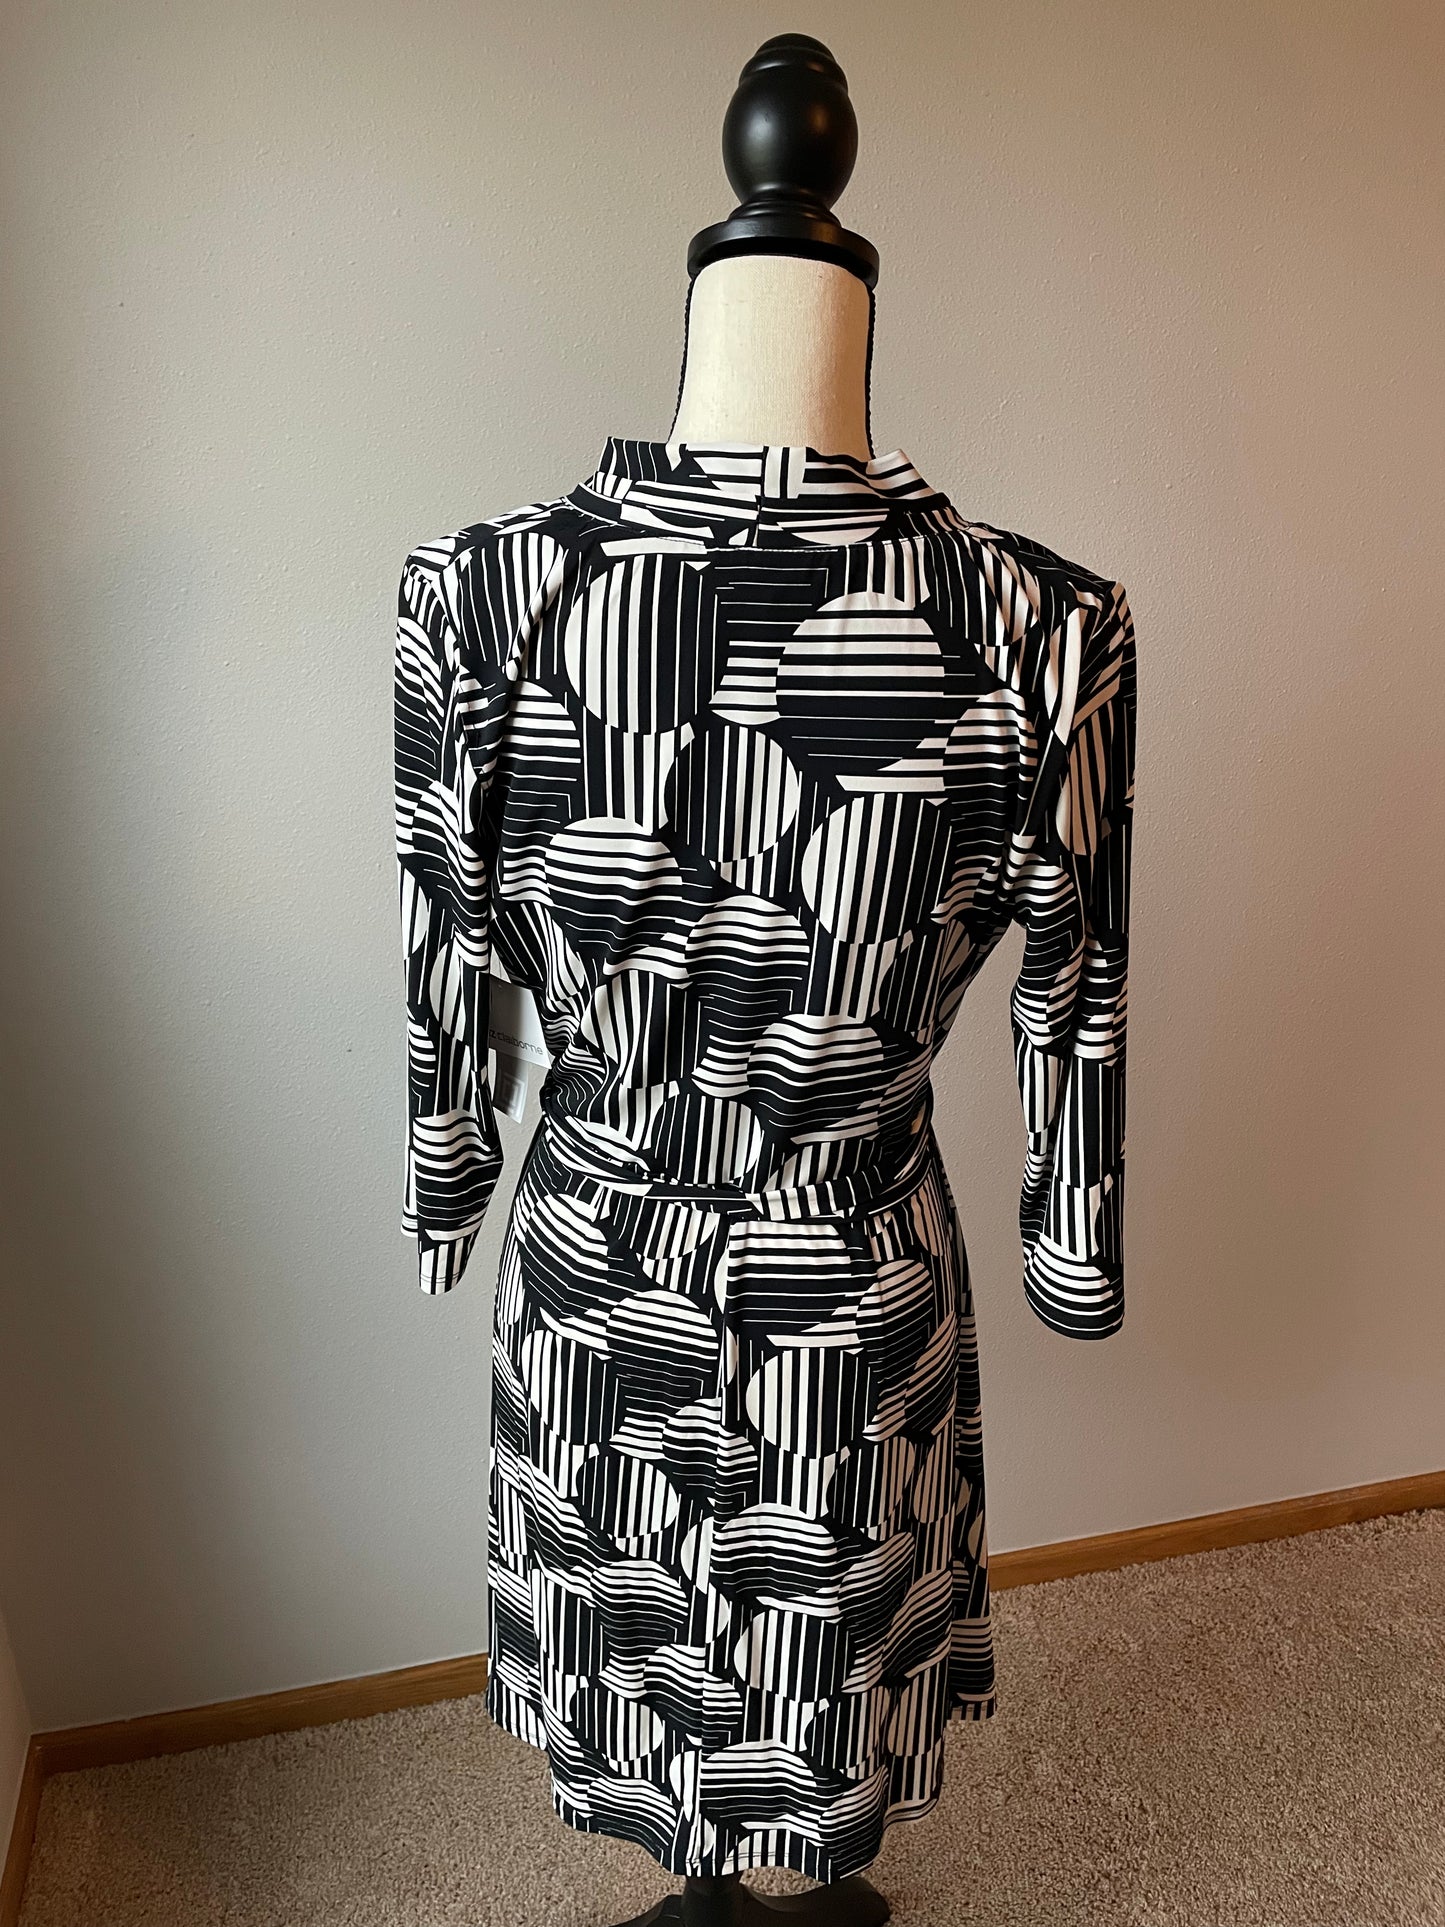 Liz Claiborne Geometric Tie Dress (M)